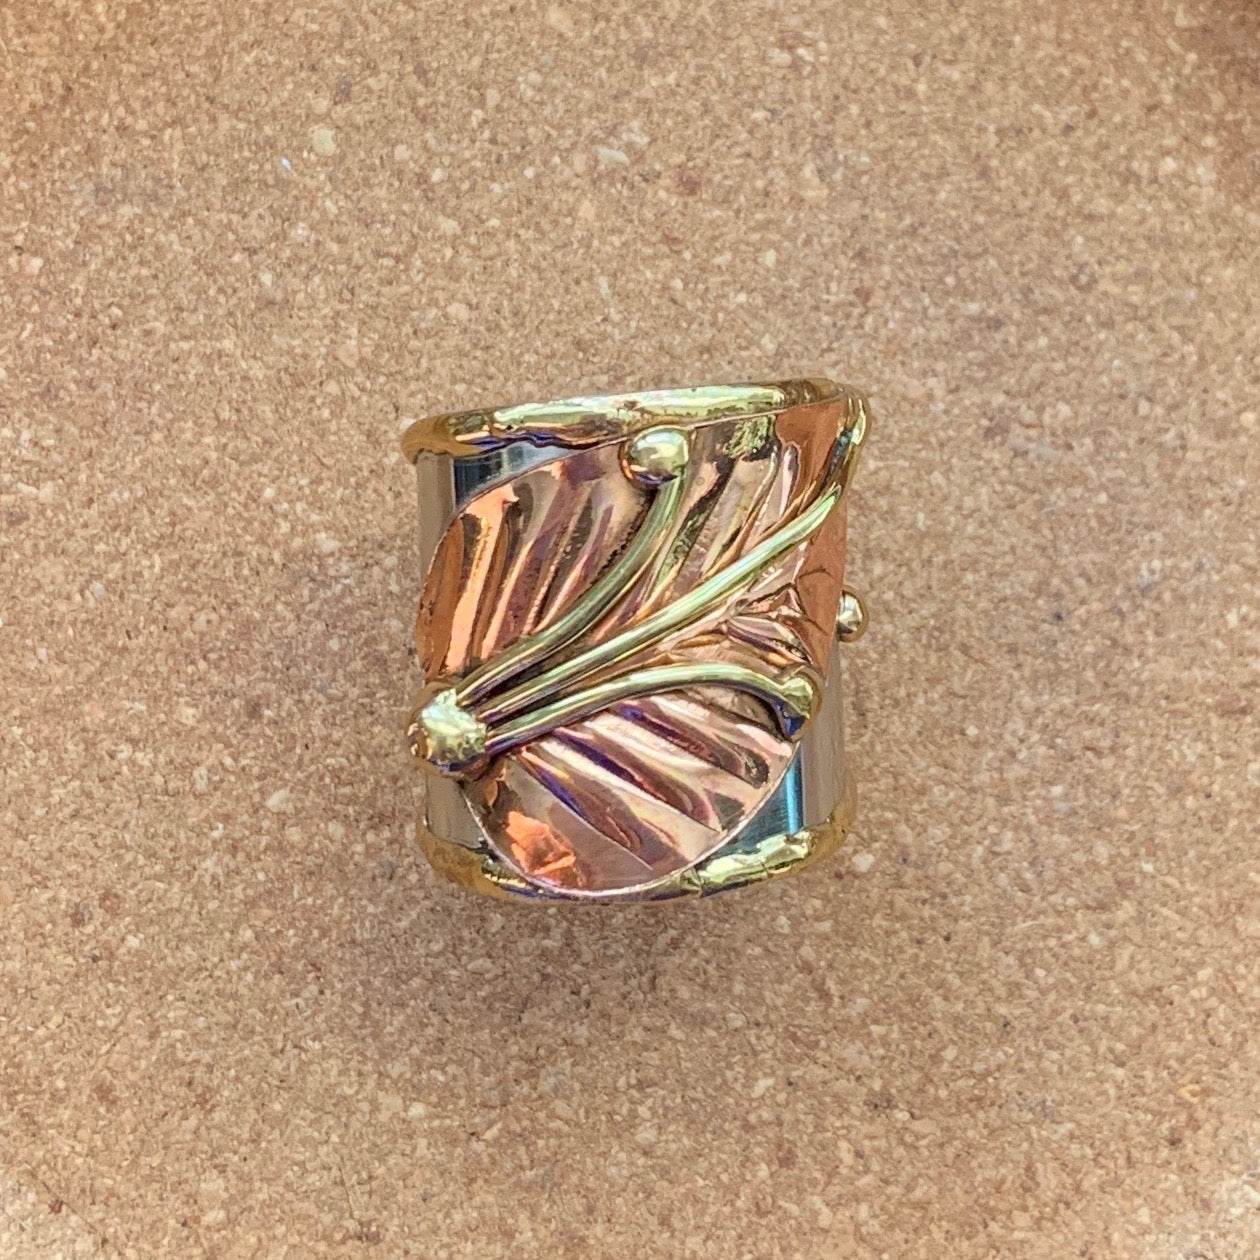 Revealing Ring - Adjustable Mixed-Metal Leaf Ring